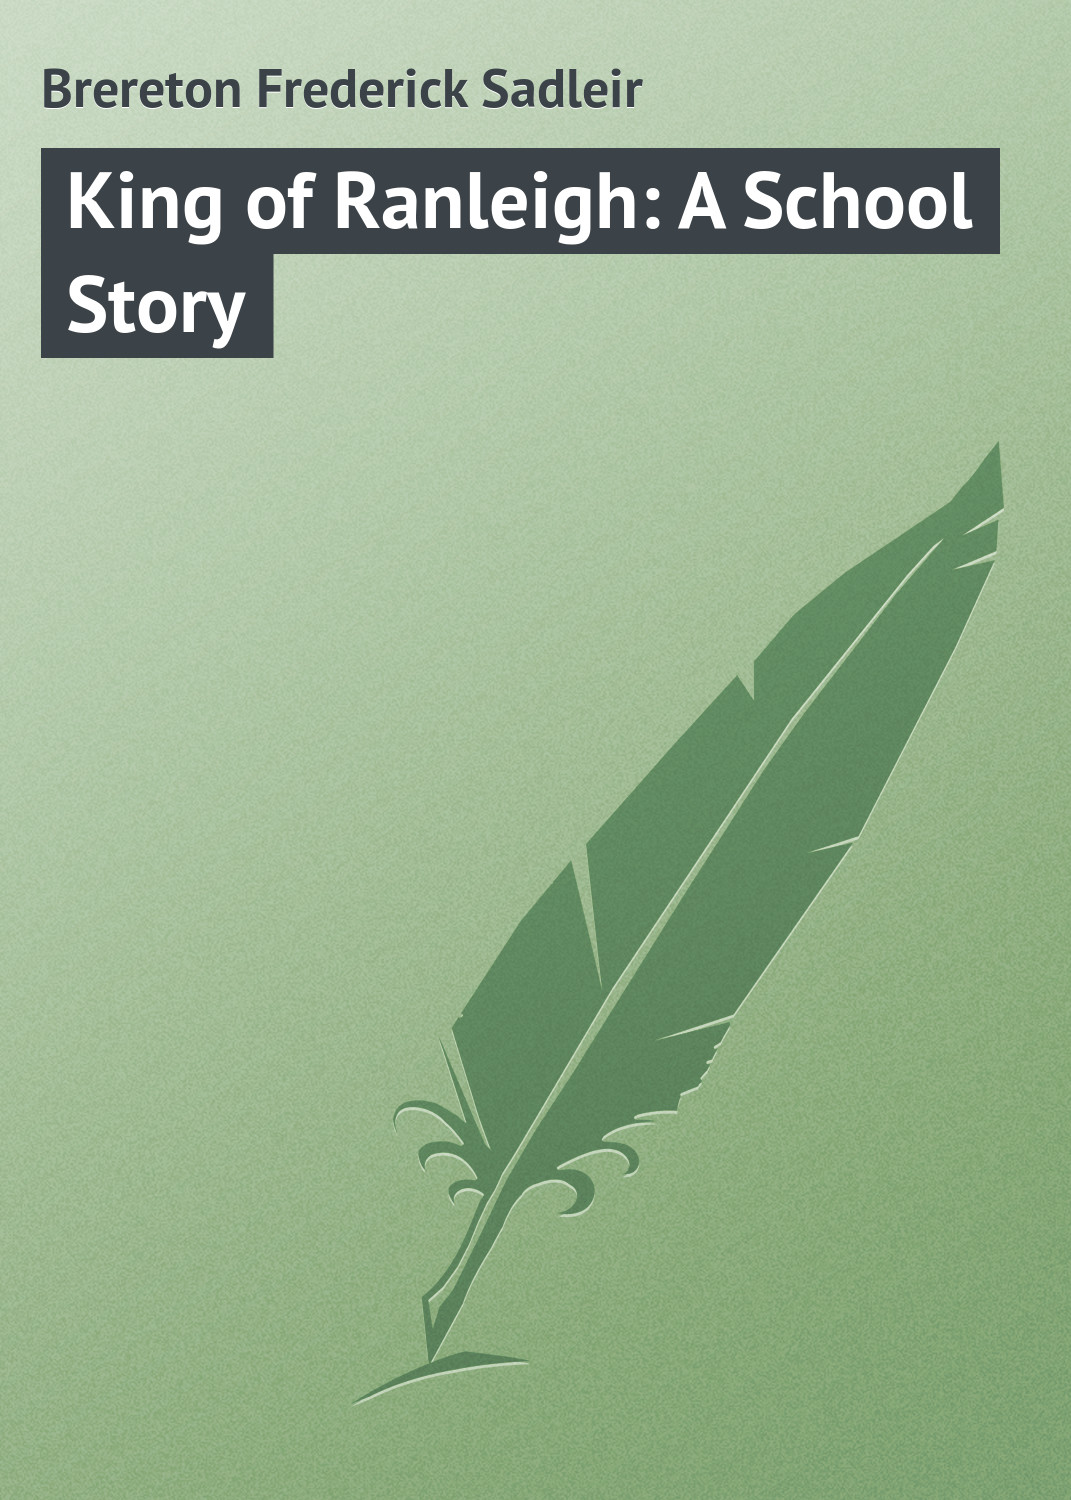 Книга King of Ranleigh: A School Story из серии , созданная Frederick Brereton, может относится к жанру Зарубежная классика, Зарубежные детские книги. Стоимость электронной книги King of Ranleigh: A School Story с идентификатором 23166571 составляет 5.99 руб.